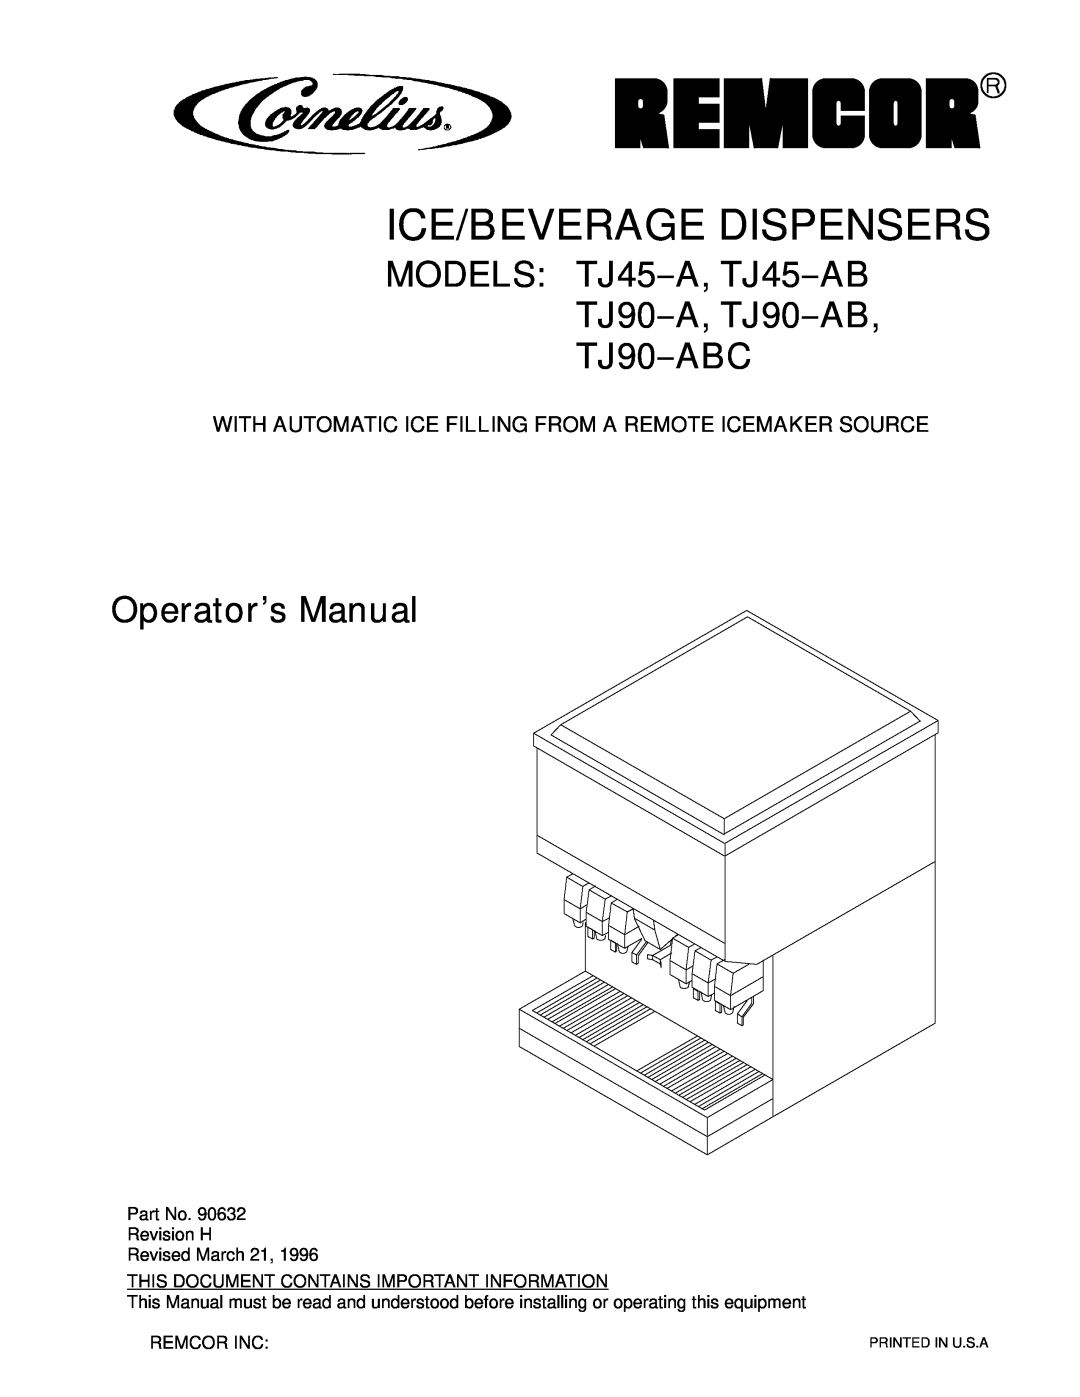 Cornelius TJ90-A manual Ice/Beverage Dispensers, MODELS TJ45--A, TJ45--AB TJ90--A, TJ90--AB TJ90--ABC, Operator’s Manual 